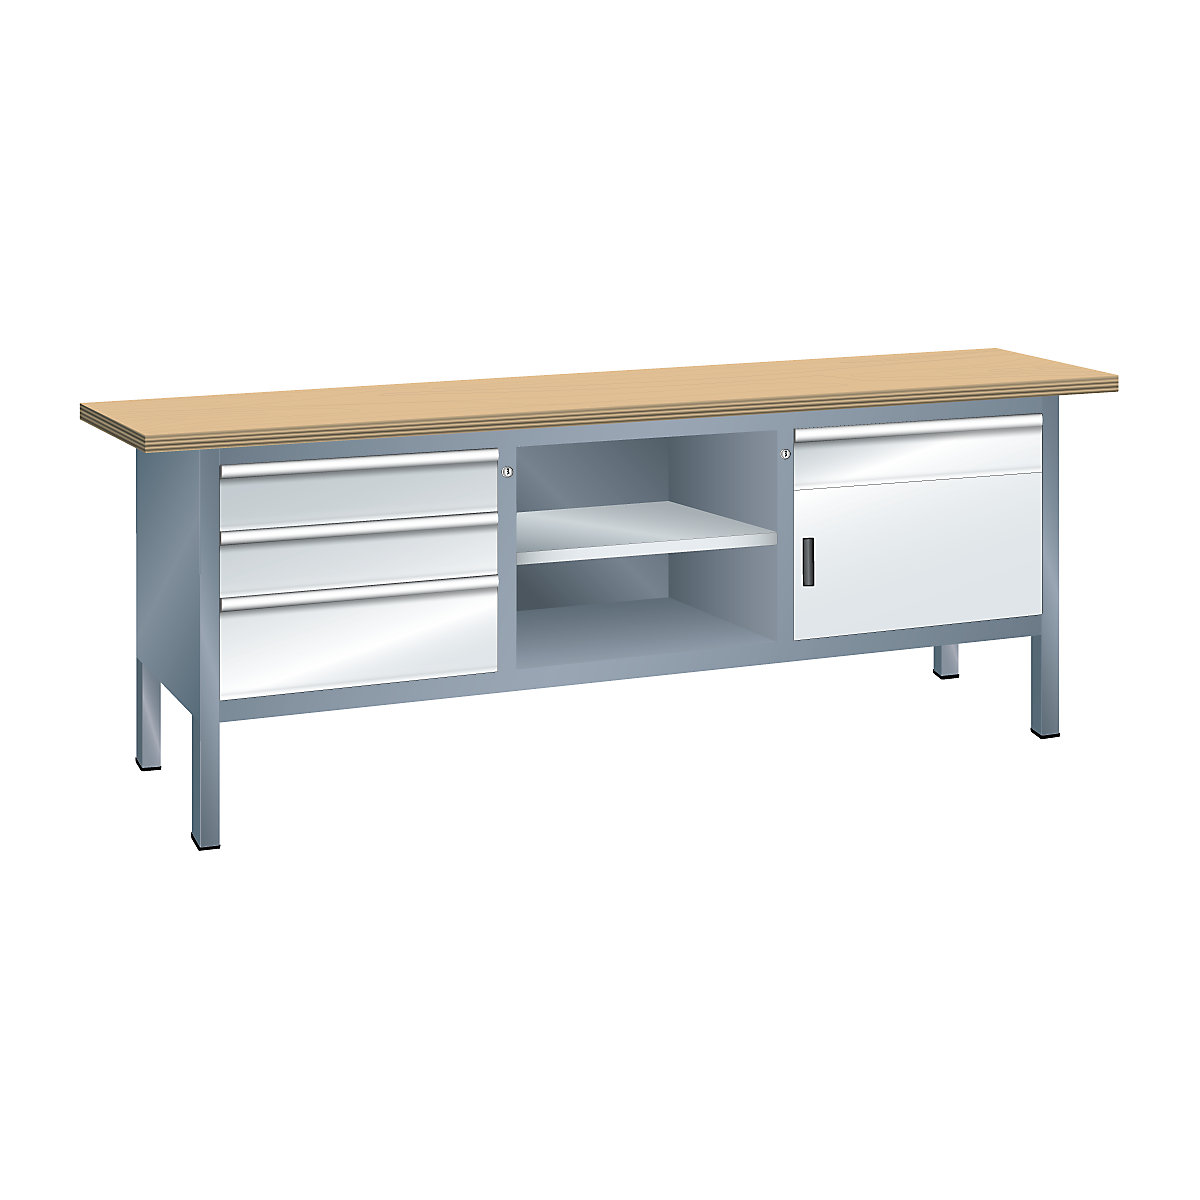 Stół warsztatowy, konstrukcja ramowa – LISTA, szer. 2000 mm, 4 szuflady, 1 drzwi, korpus szary metallic, front jasnoszary-3